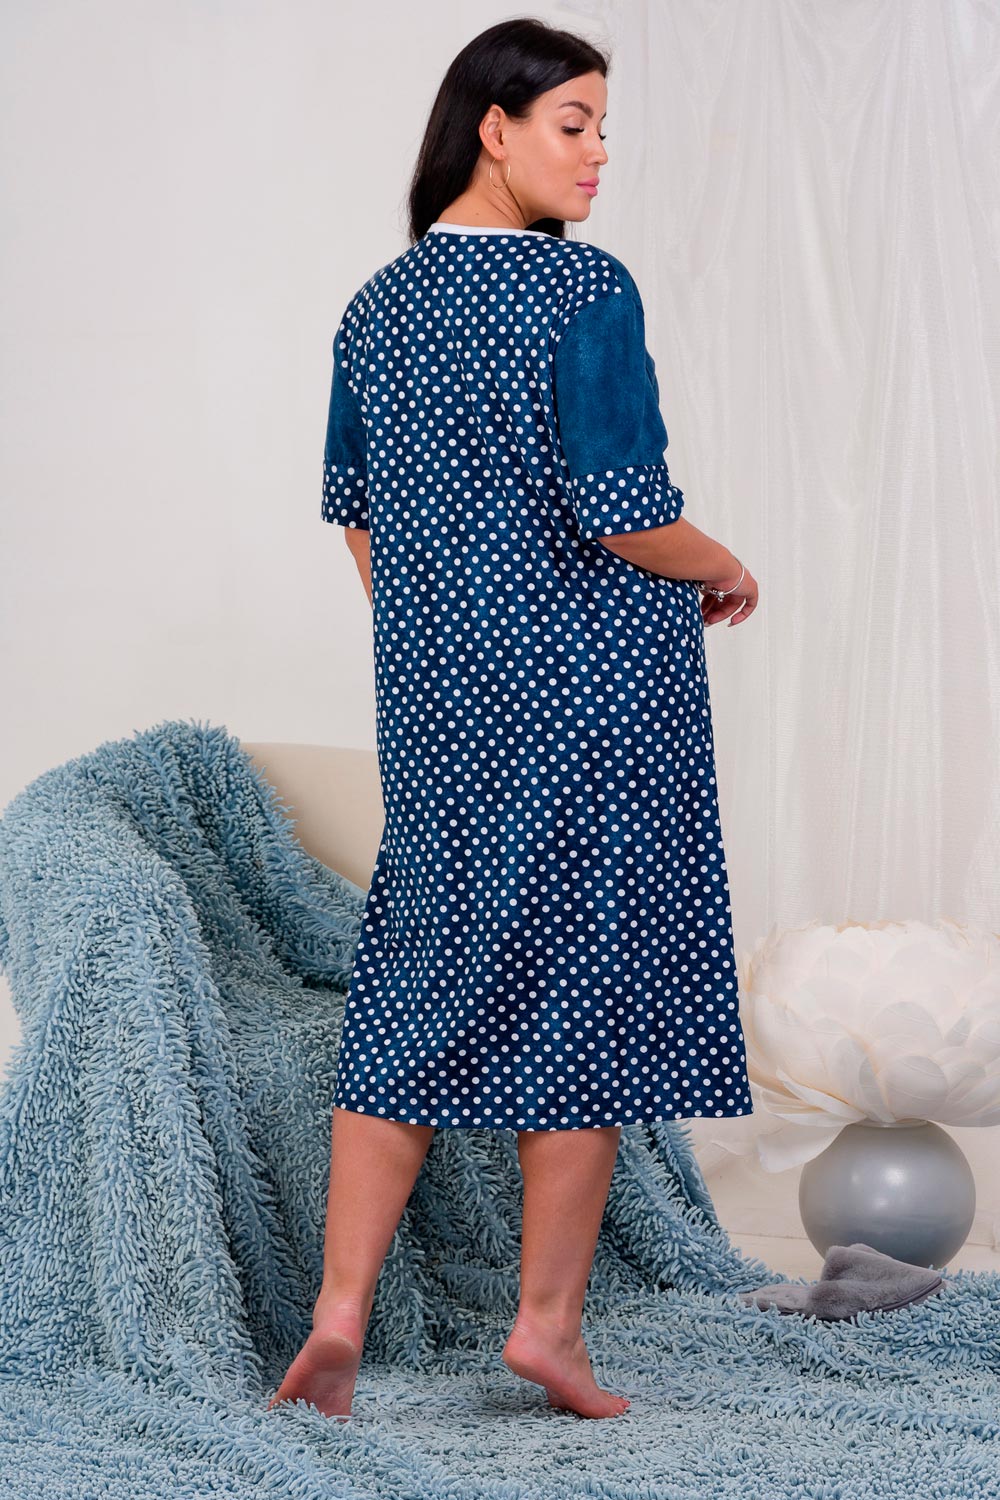 Халат на молнии в горошек 2836 в интернет-магазине женской одежды  Уют-текстиль из г. Иваново оптом и в розницу со скидками